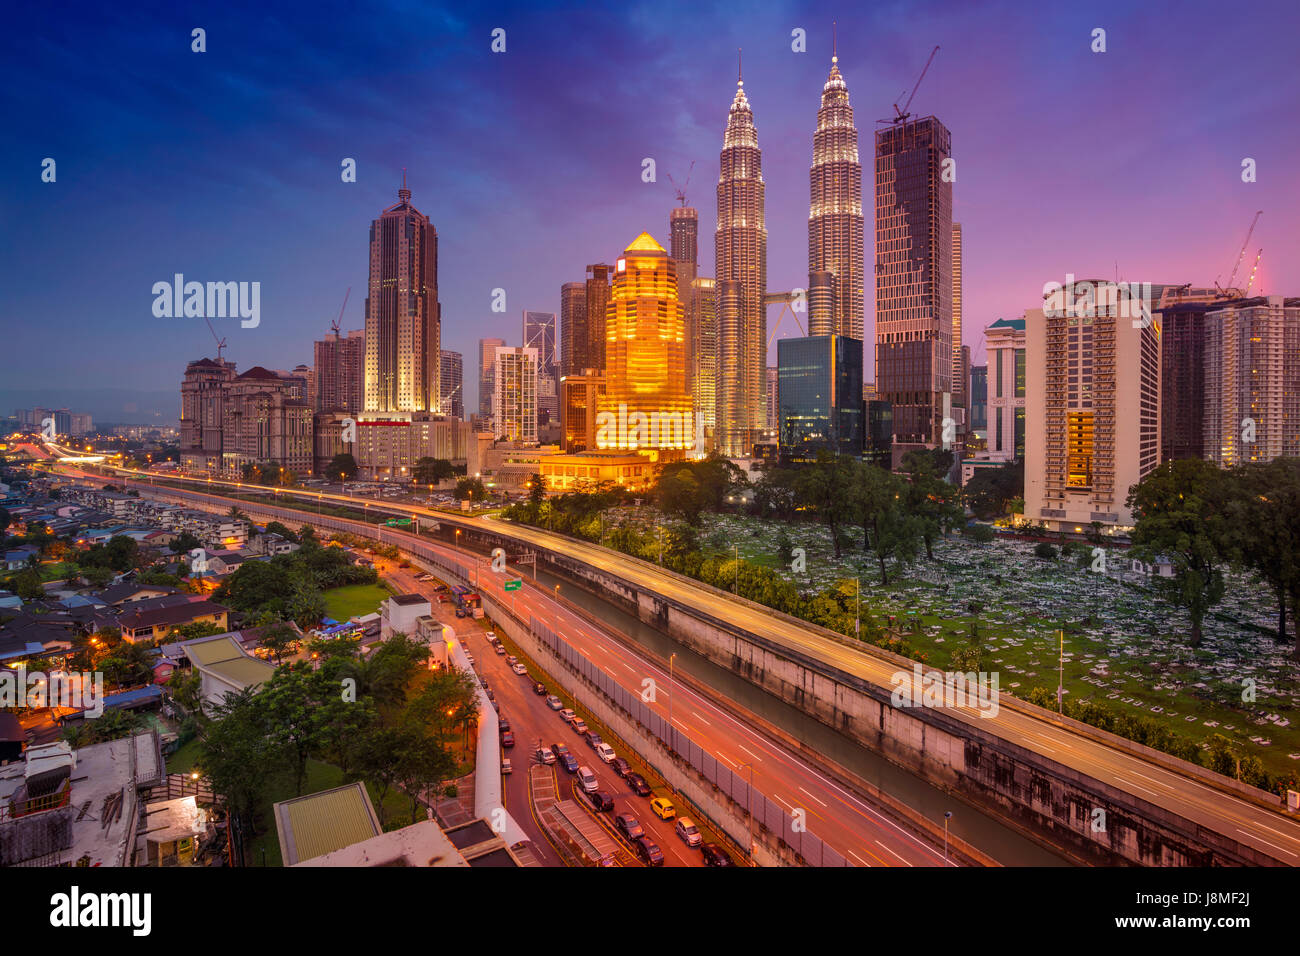 Kuala Lumpur. Cityscape image de Kuala Lumpur, Malaisie pendant le crépuscule heure bleue. Banque D'Images